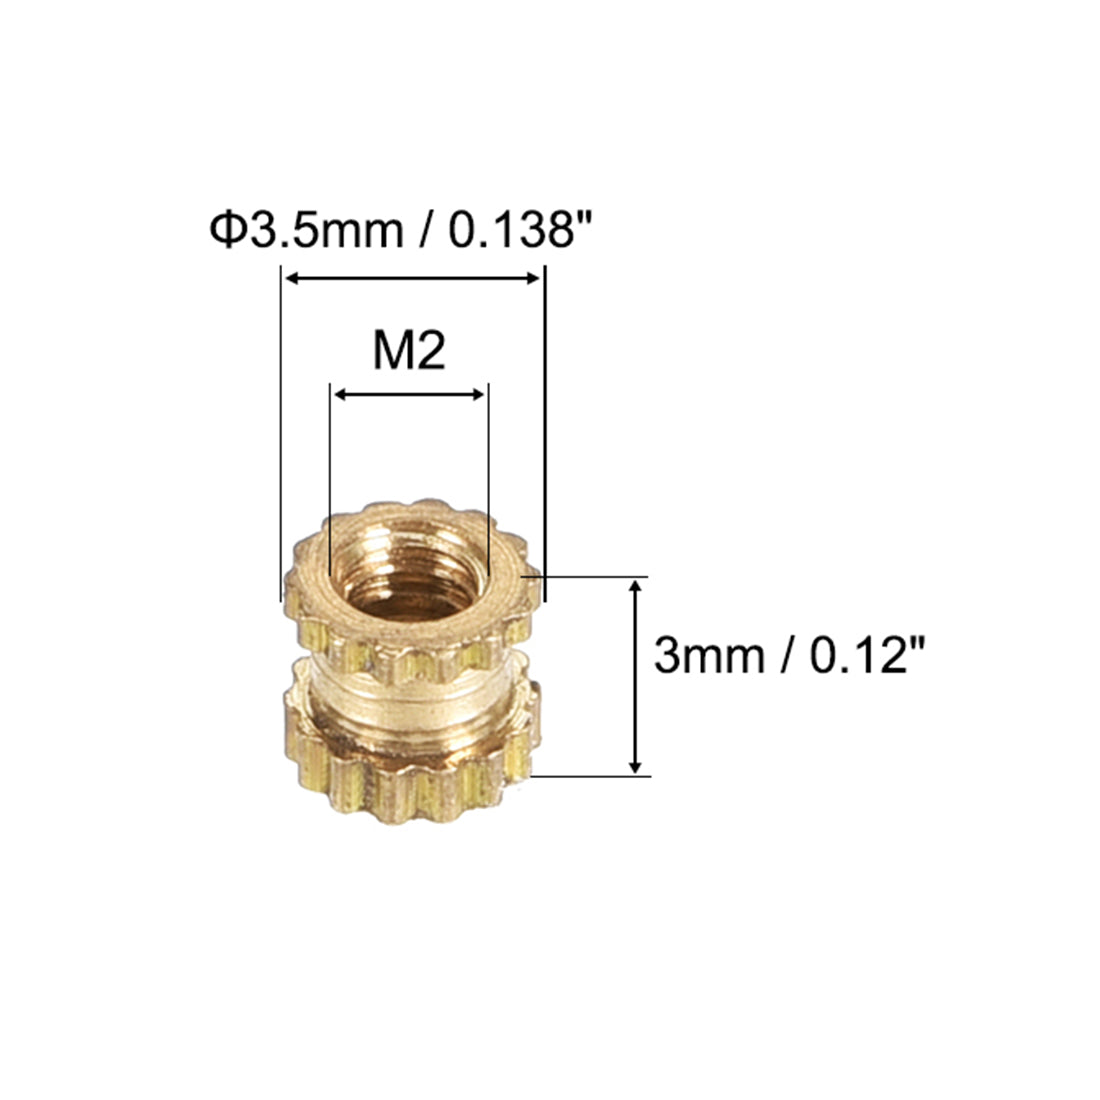 uxcell Uxcell Knurled Insert Nuts, M2 x 3mm(L) x 3.5mm(OD) Female Thread Brass Embedment Assortment Kit, 10 Pcs